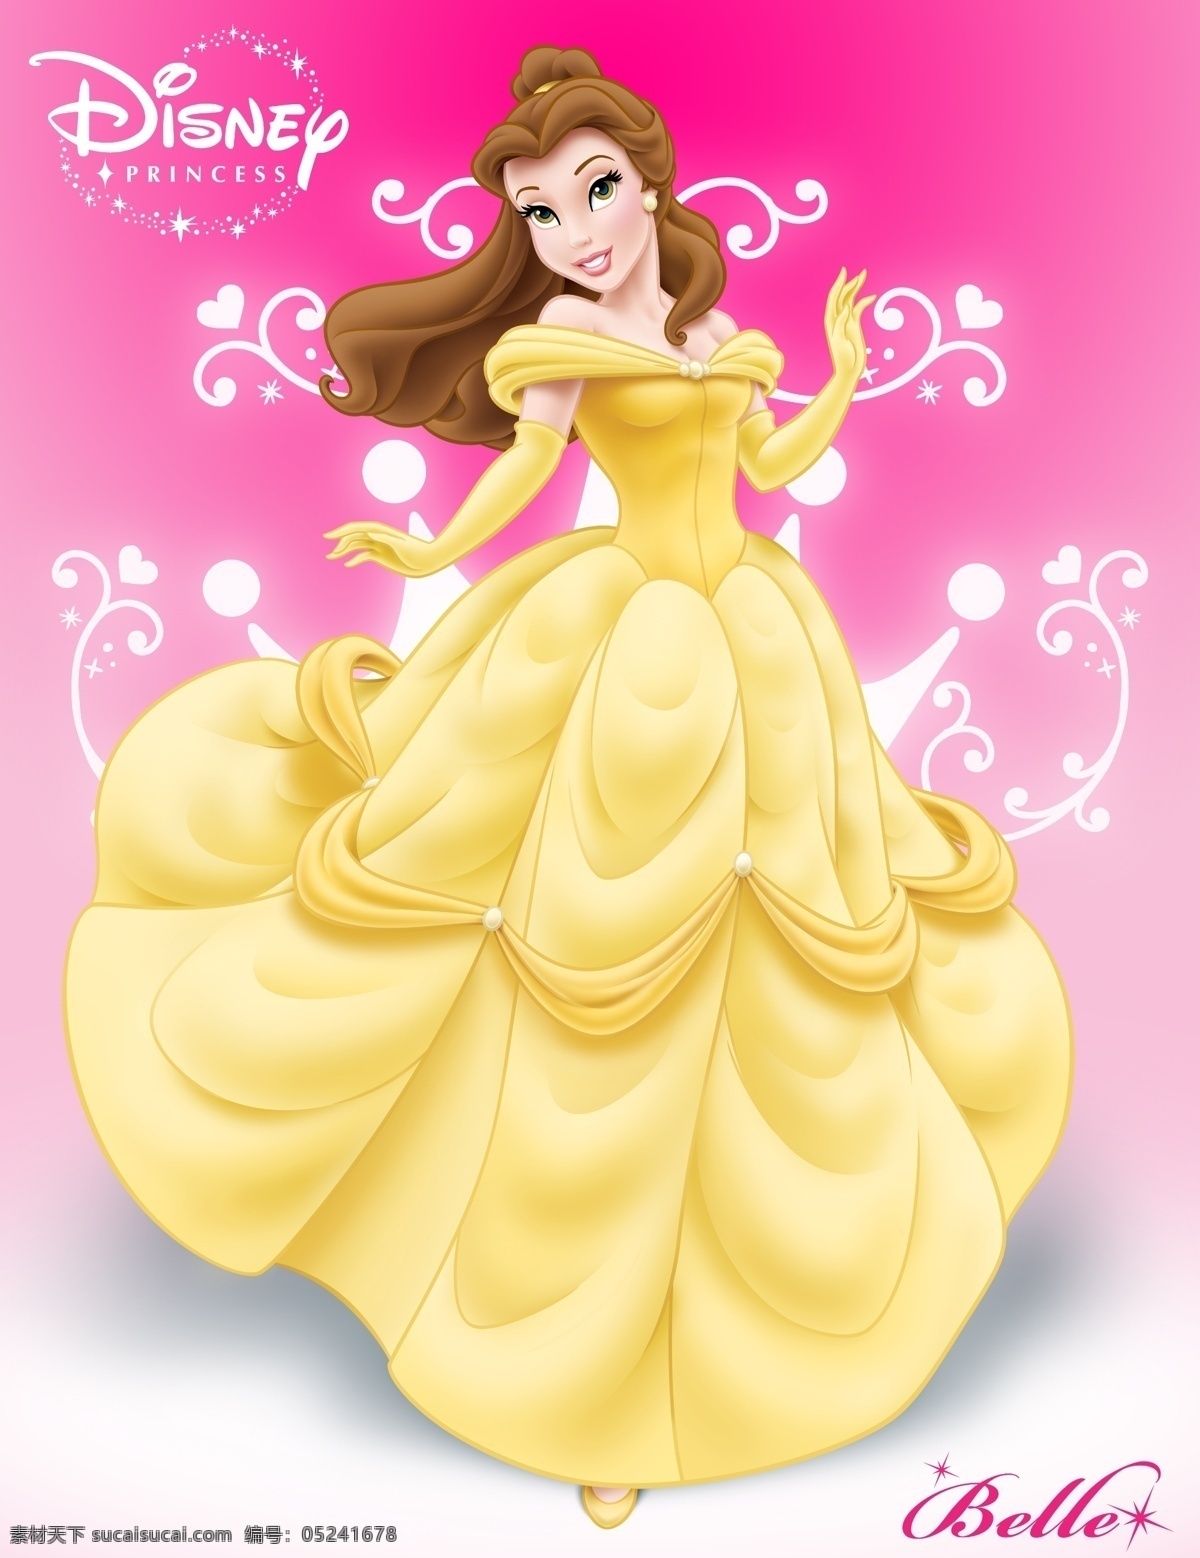 迪士尼 野兽公主 贝儿 belle 2010 年 城堡 奇迹发生 美女与野兽 英俊王子 迪士尼小公主 人物 分层 源文件